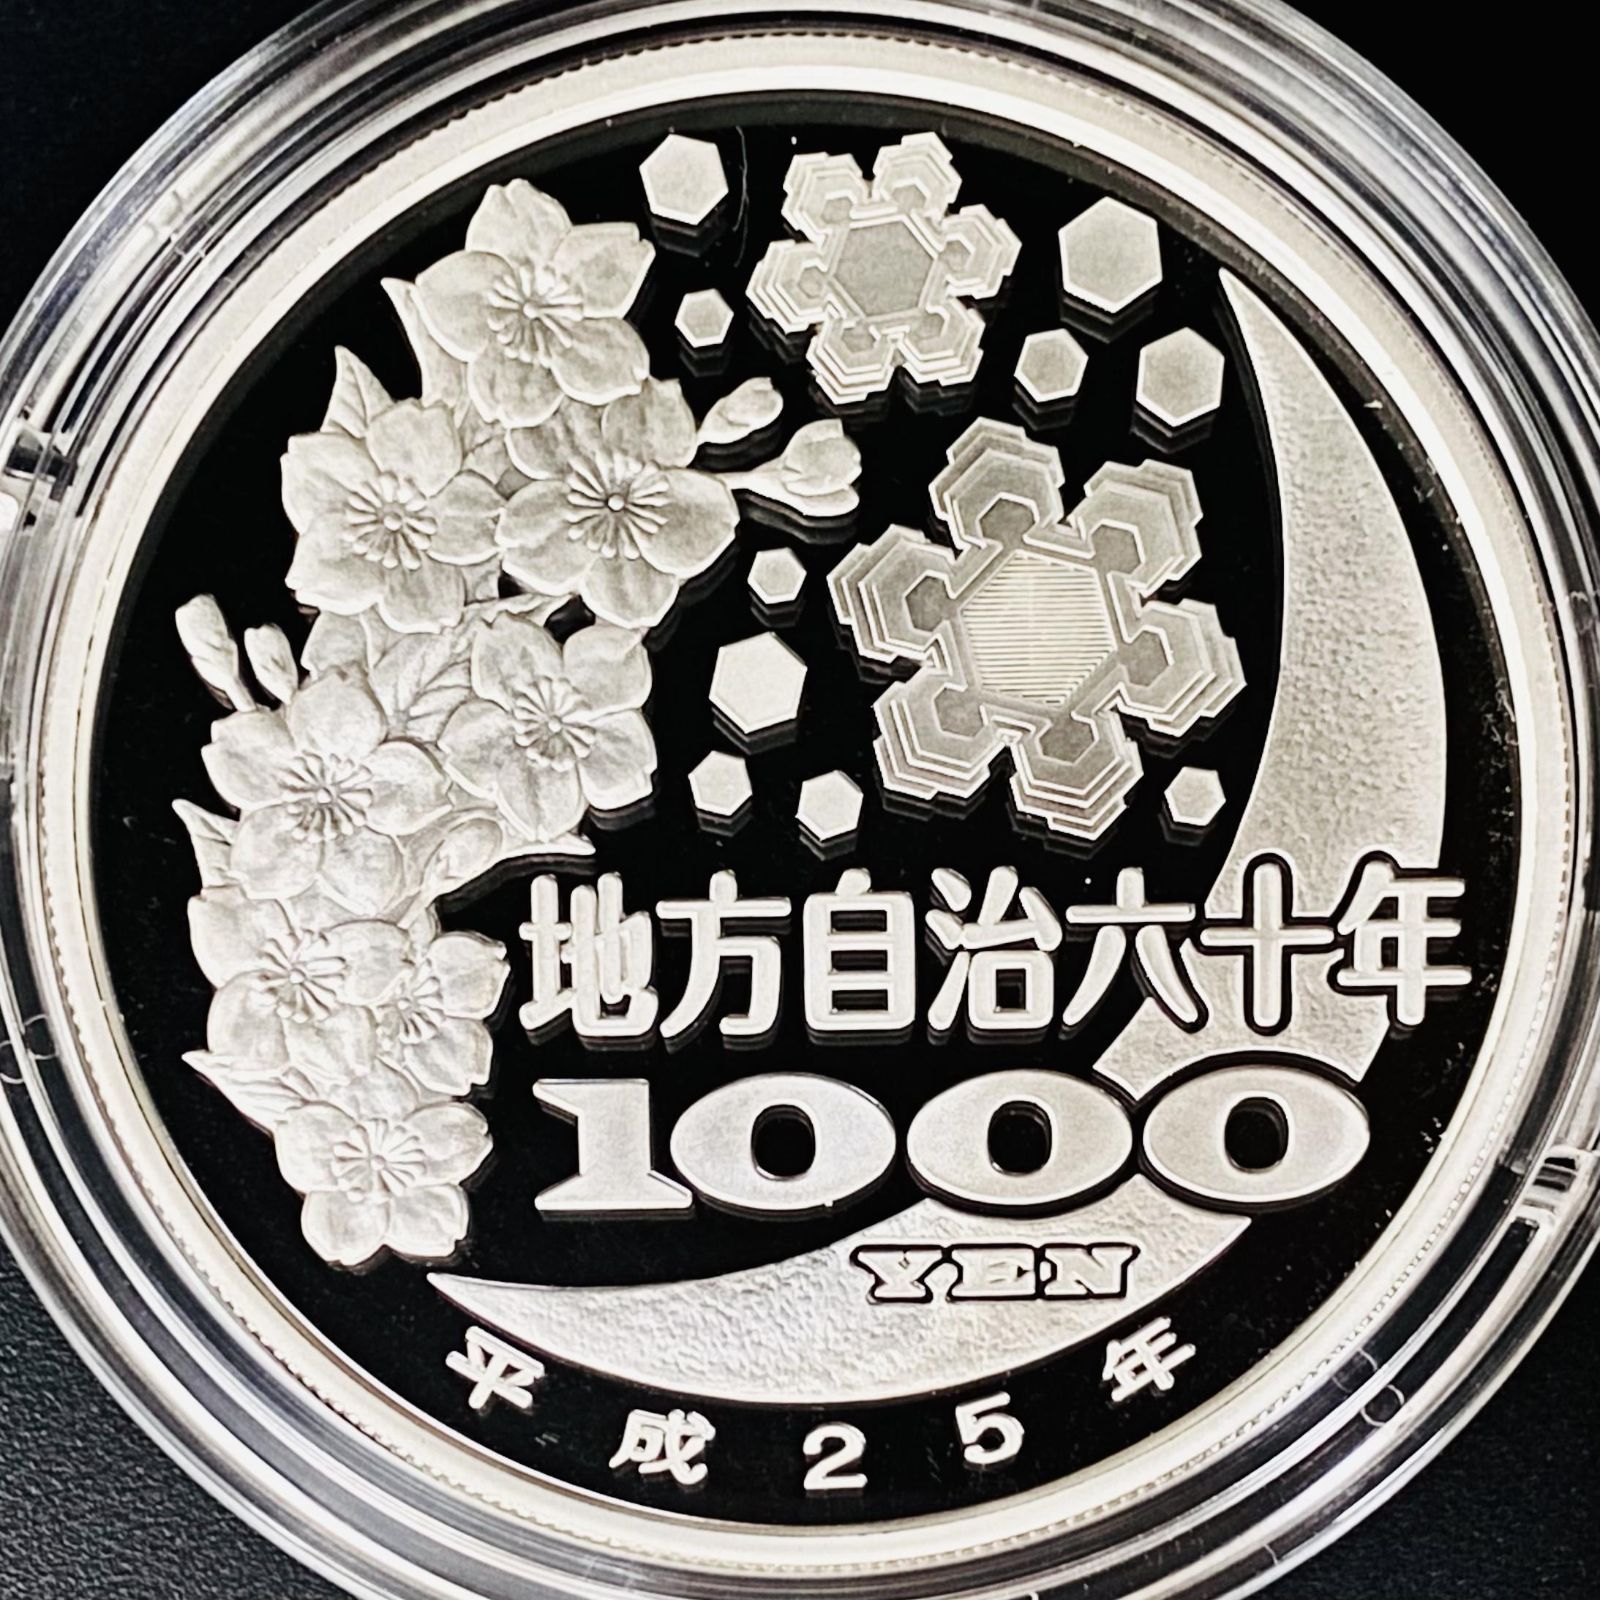 地方自治法施工六十周年記念静岡県千円銀貨